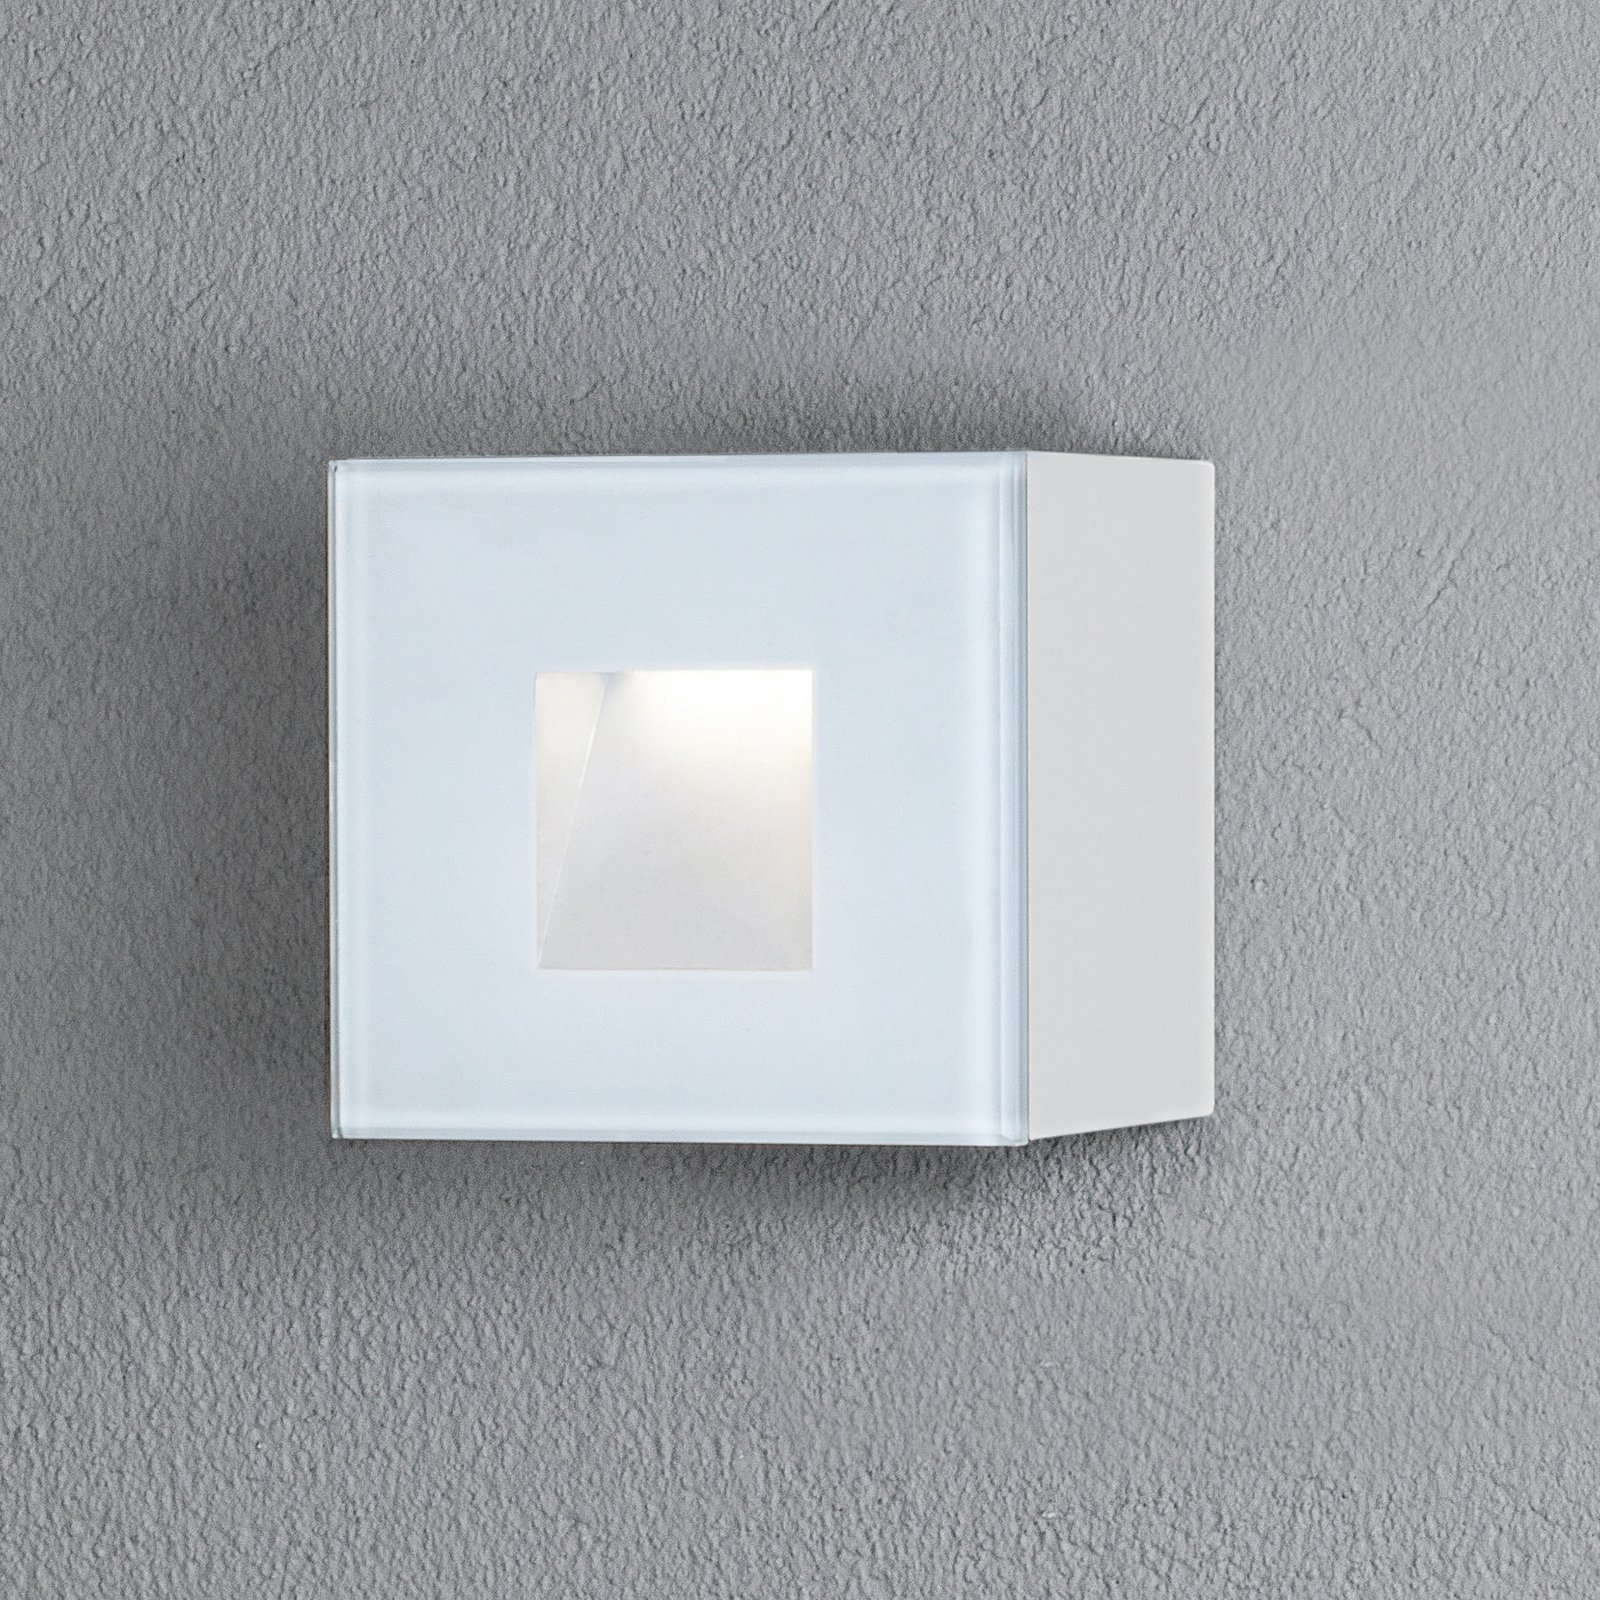 LED kültéri fali lámpa Chieri, 8 x 8 cm, fehér